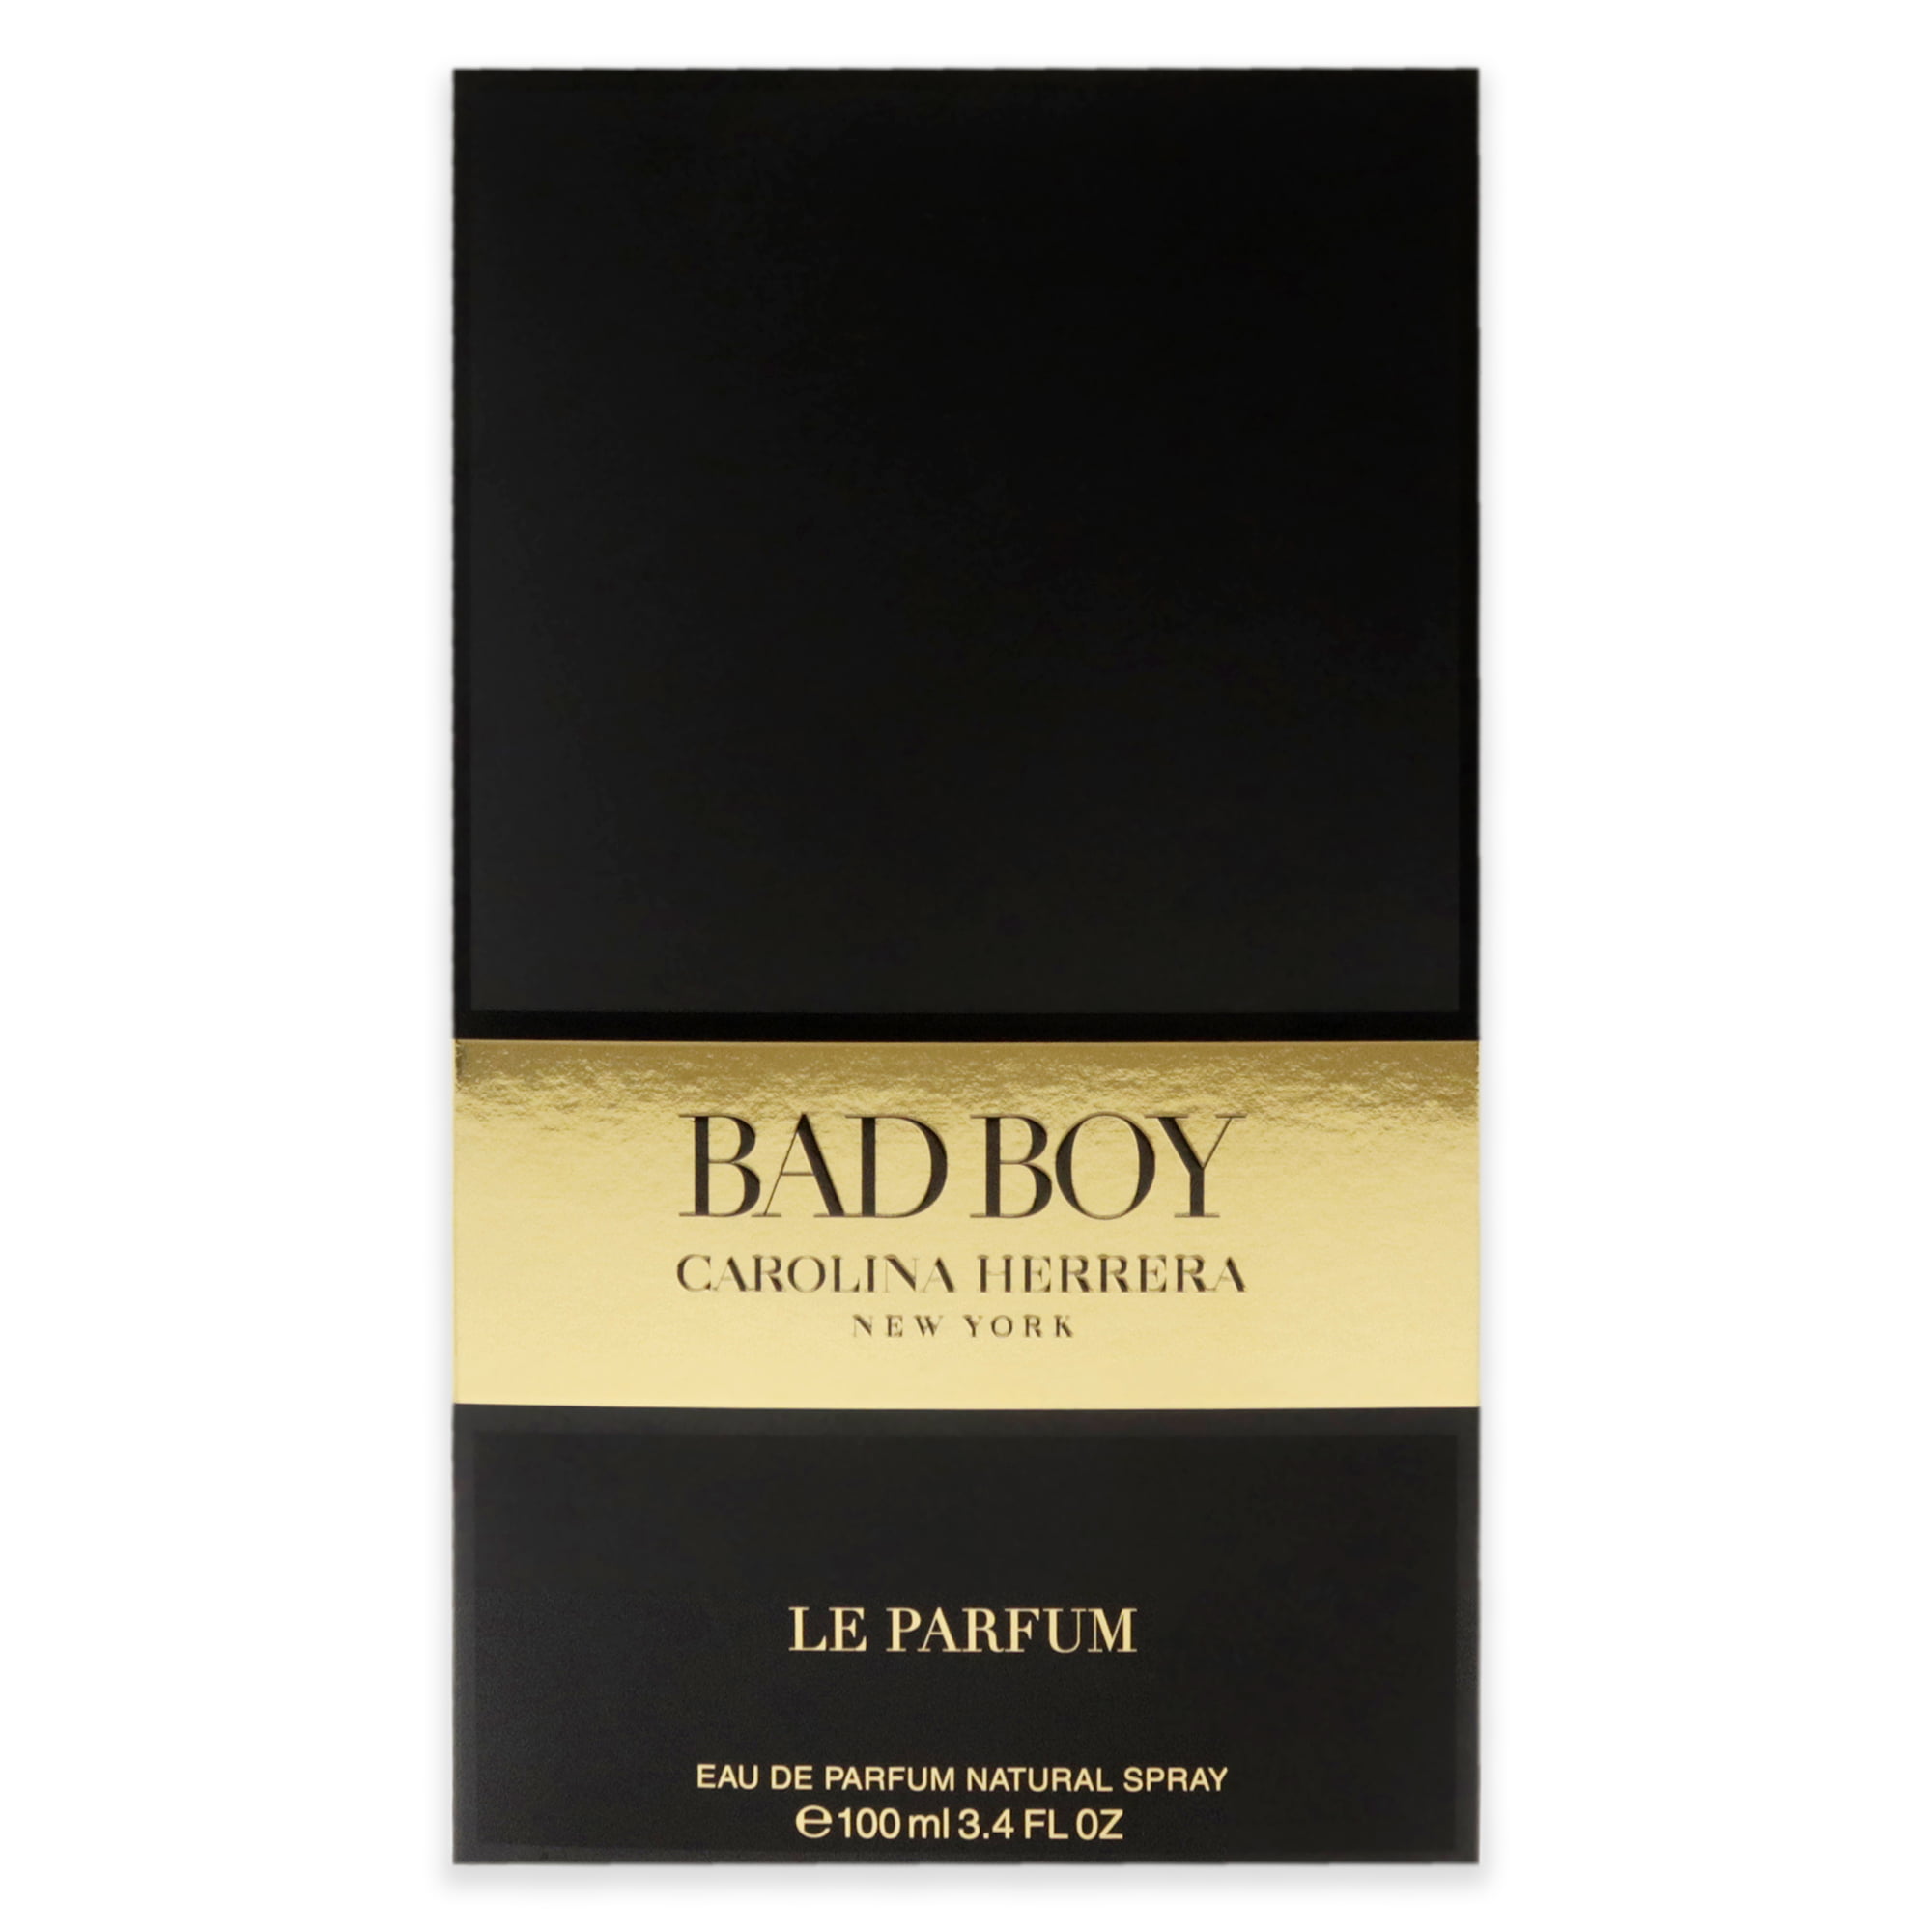 Bad Boy Le Parfum by Carolina Herrera for Men oz Eau de Parfum Spray - Walmart.com